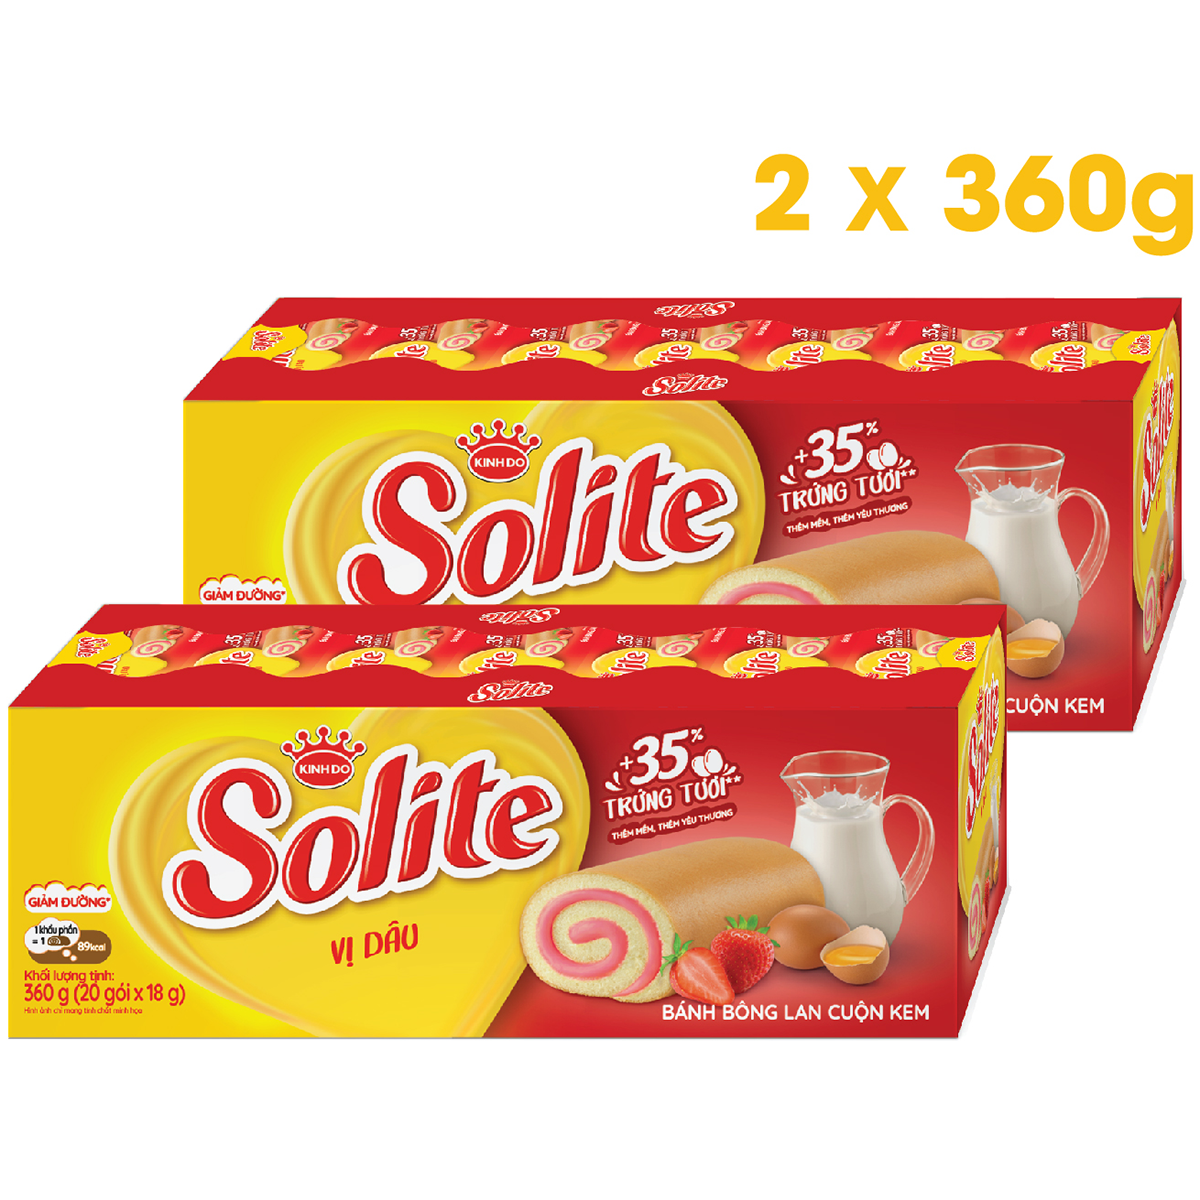 Combo 2 khay Solite bánh dinh dưỡng bông lan cuộn, giảm đường, vị dâu 2x360g